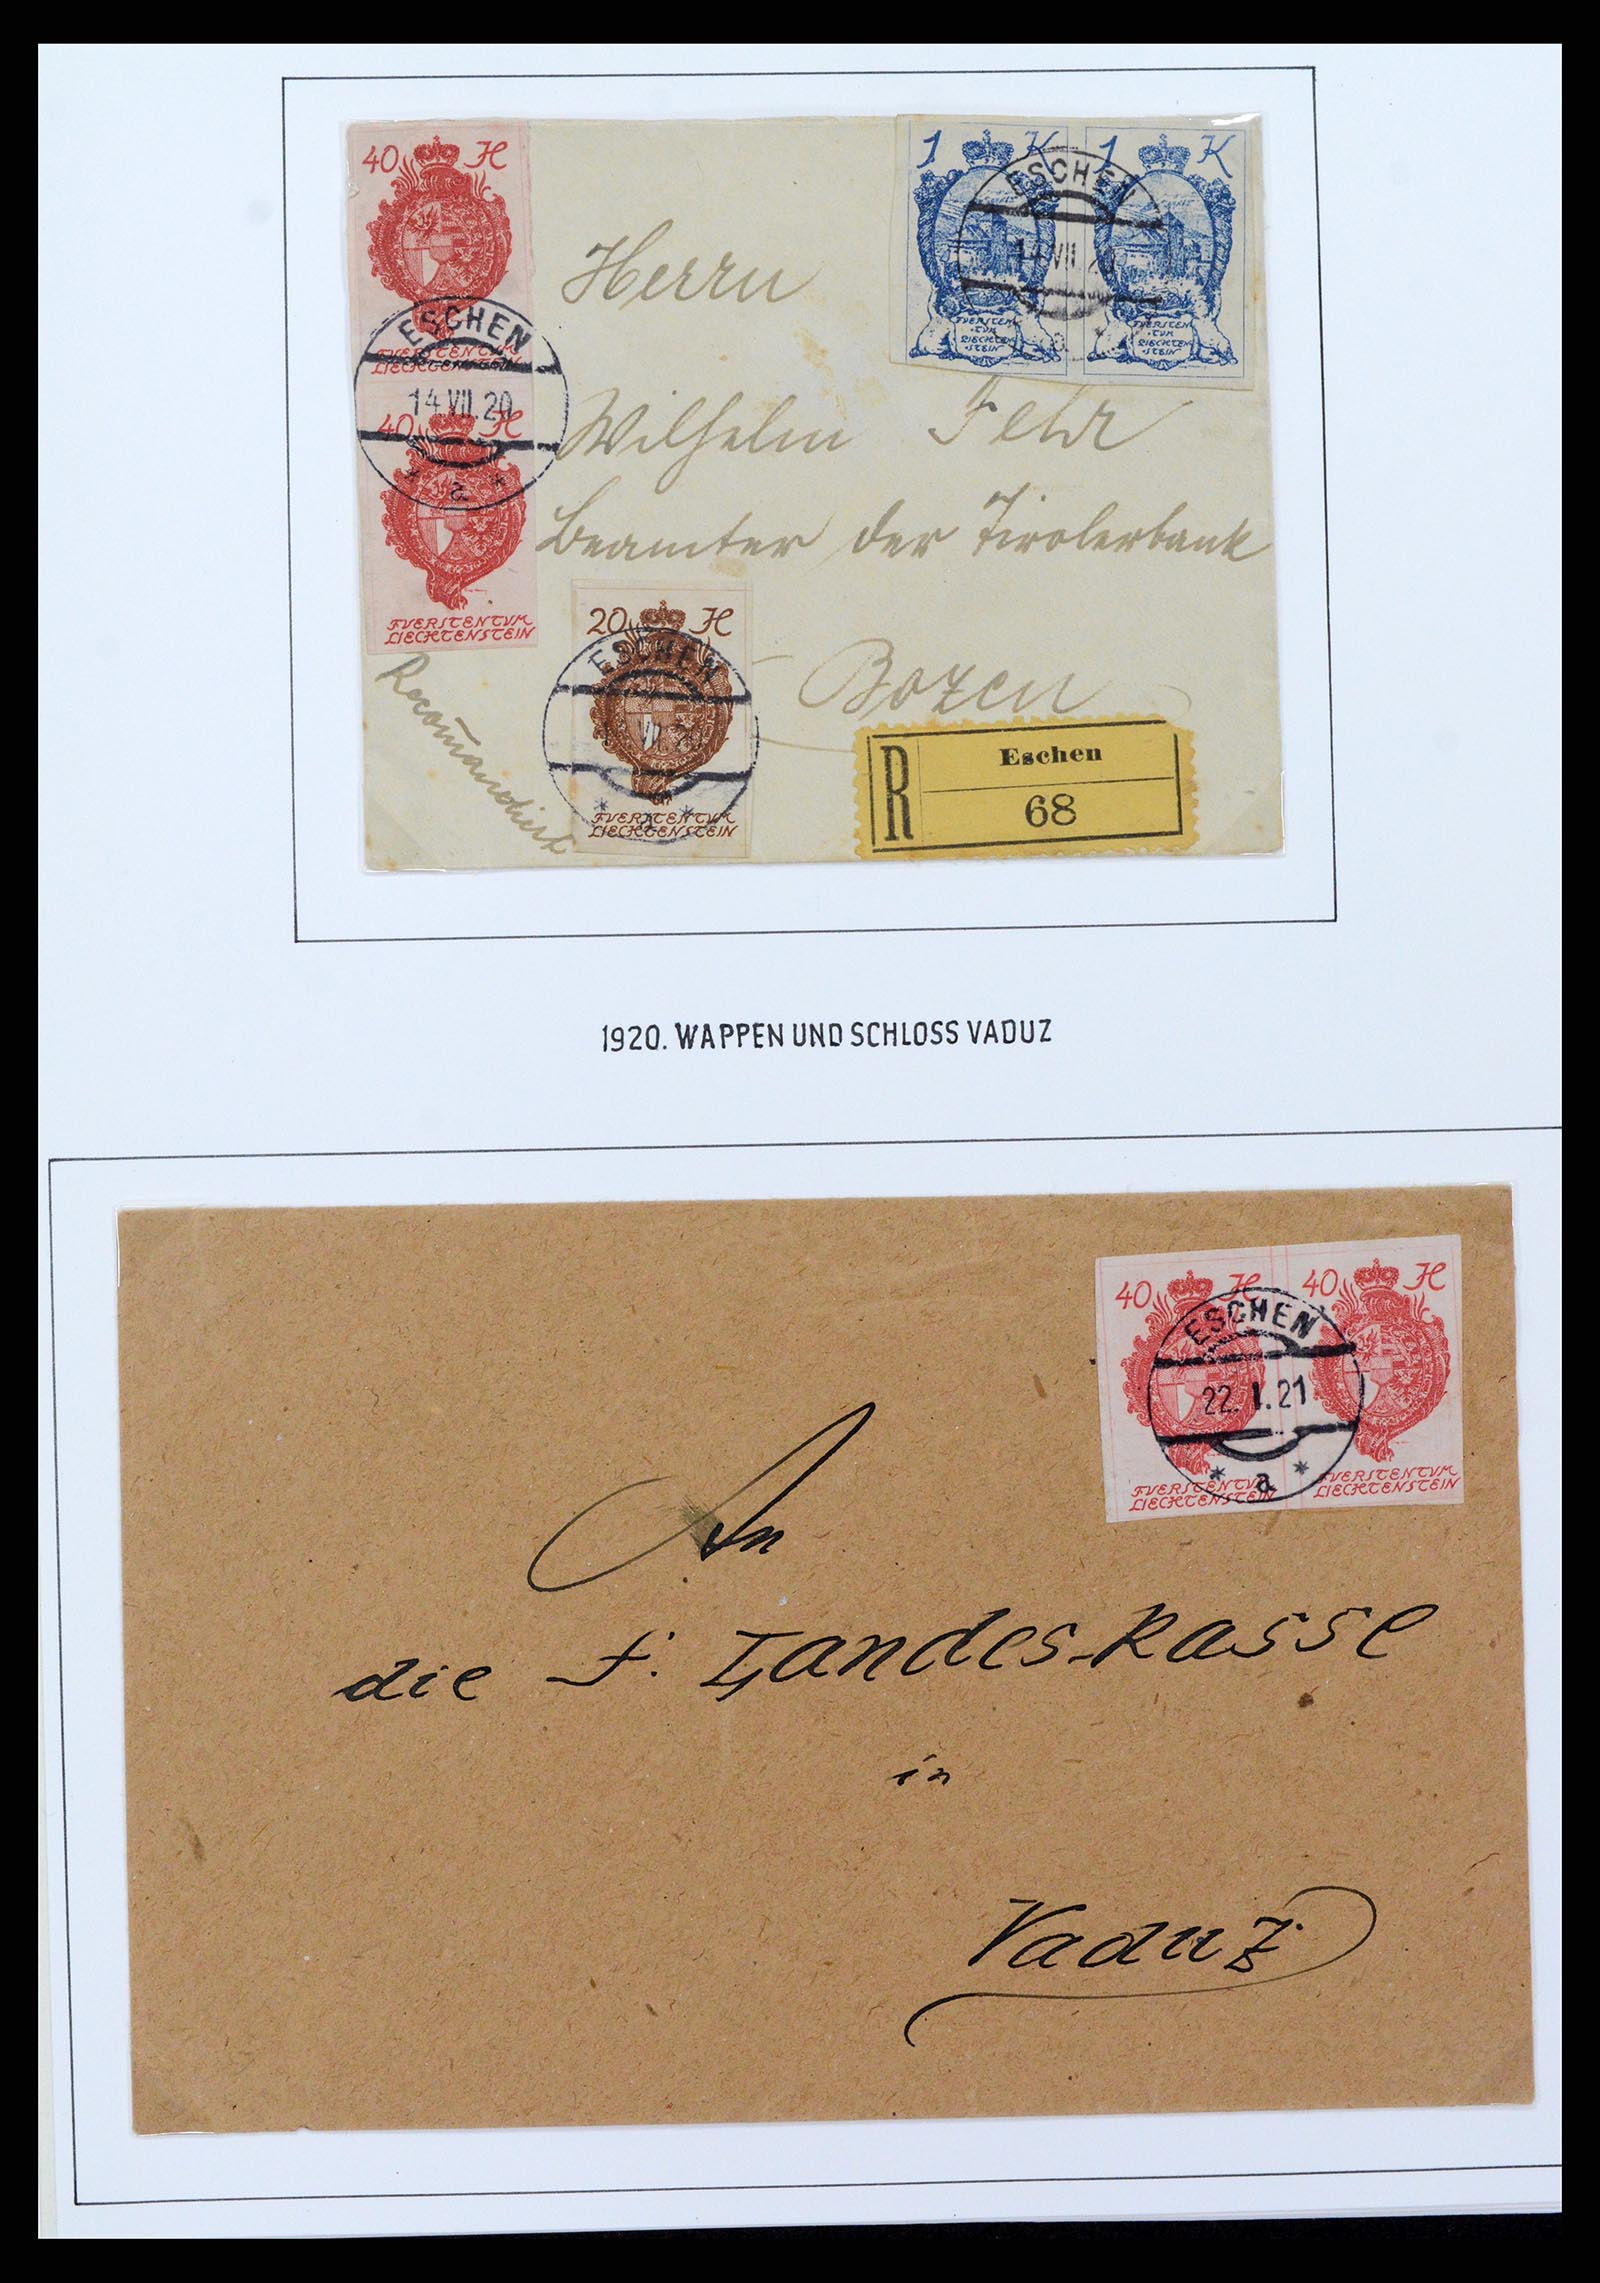 37150 0072 - Stamp collection 37150 Liechtenstein supercollection 1912-1962.